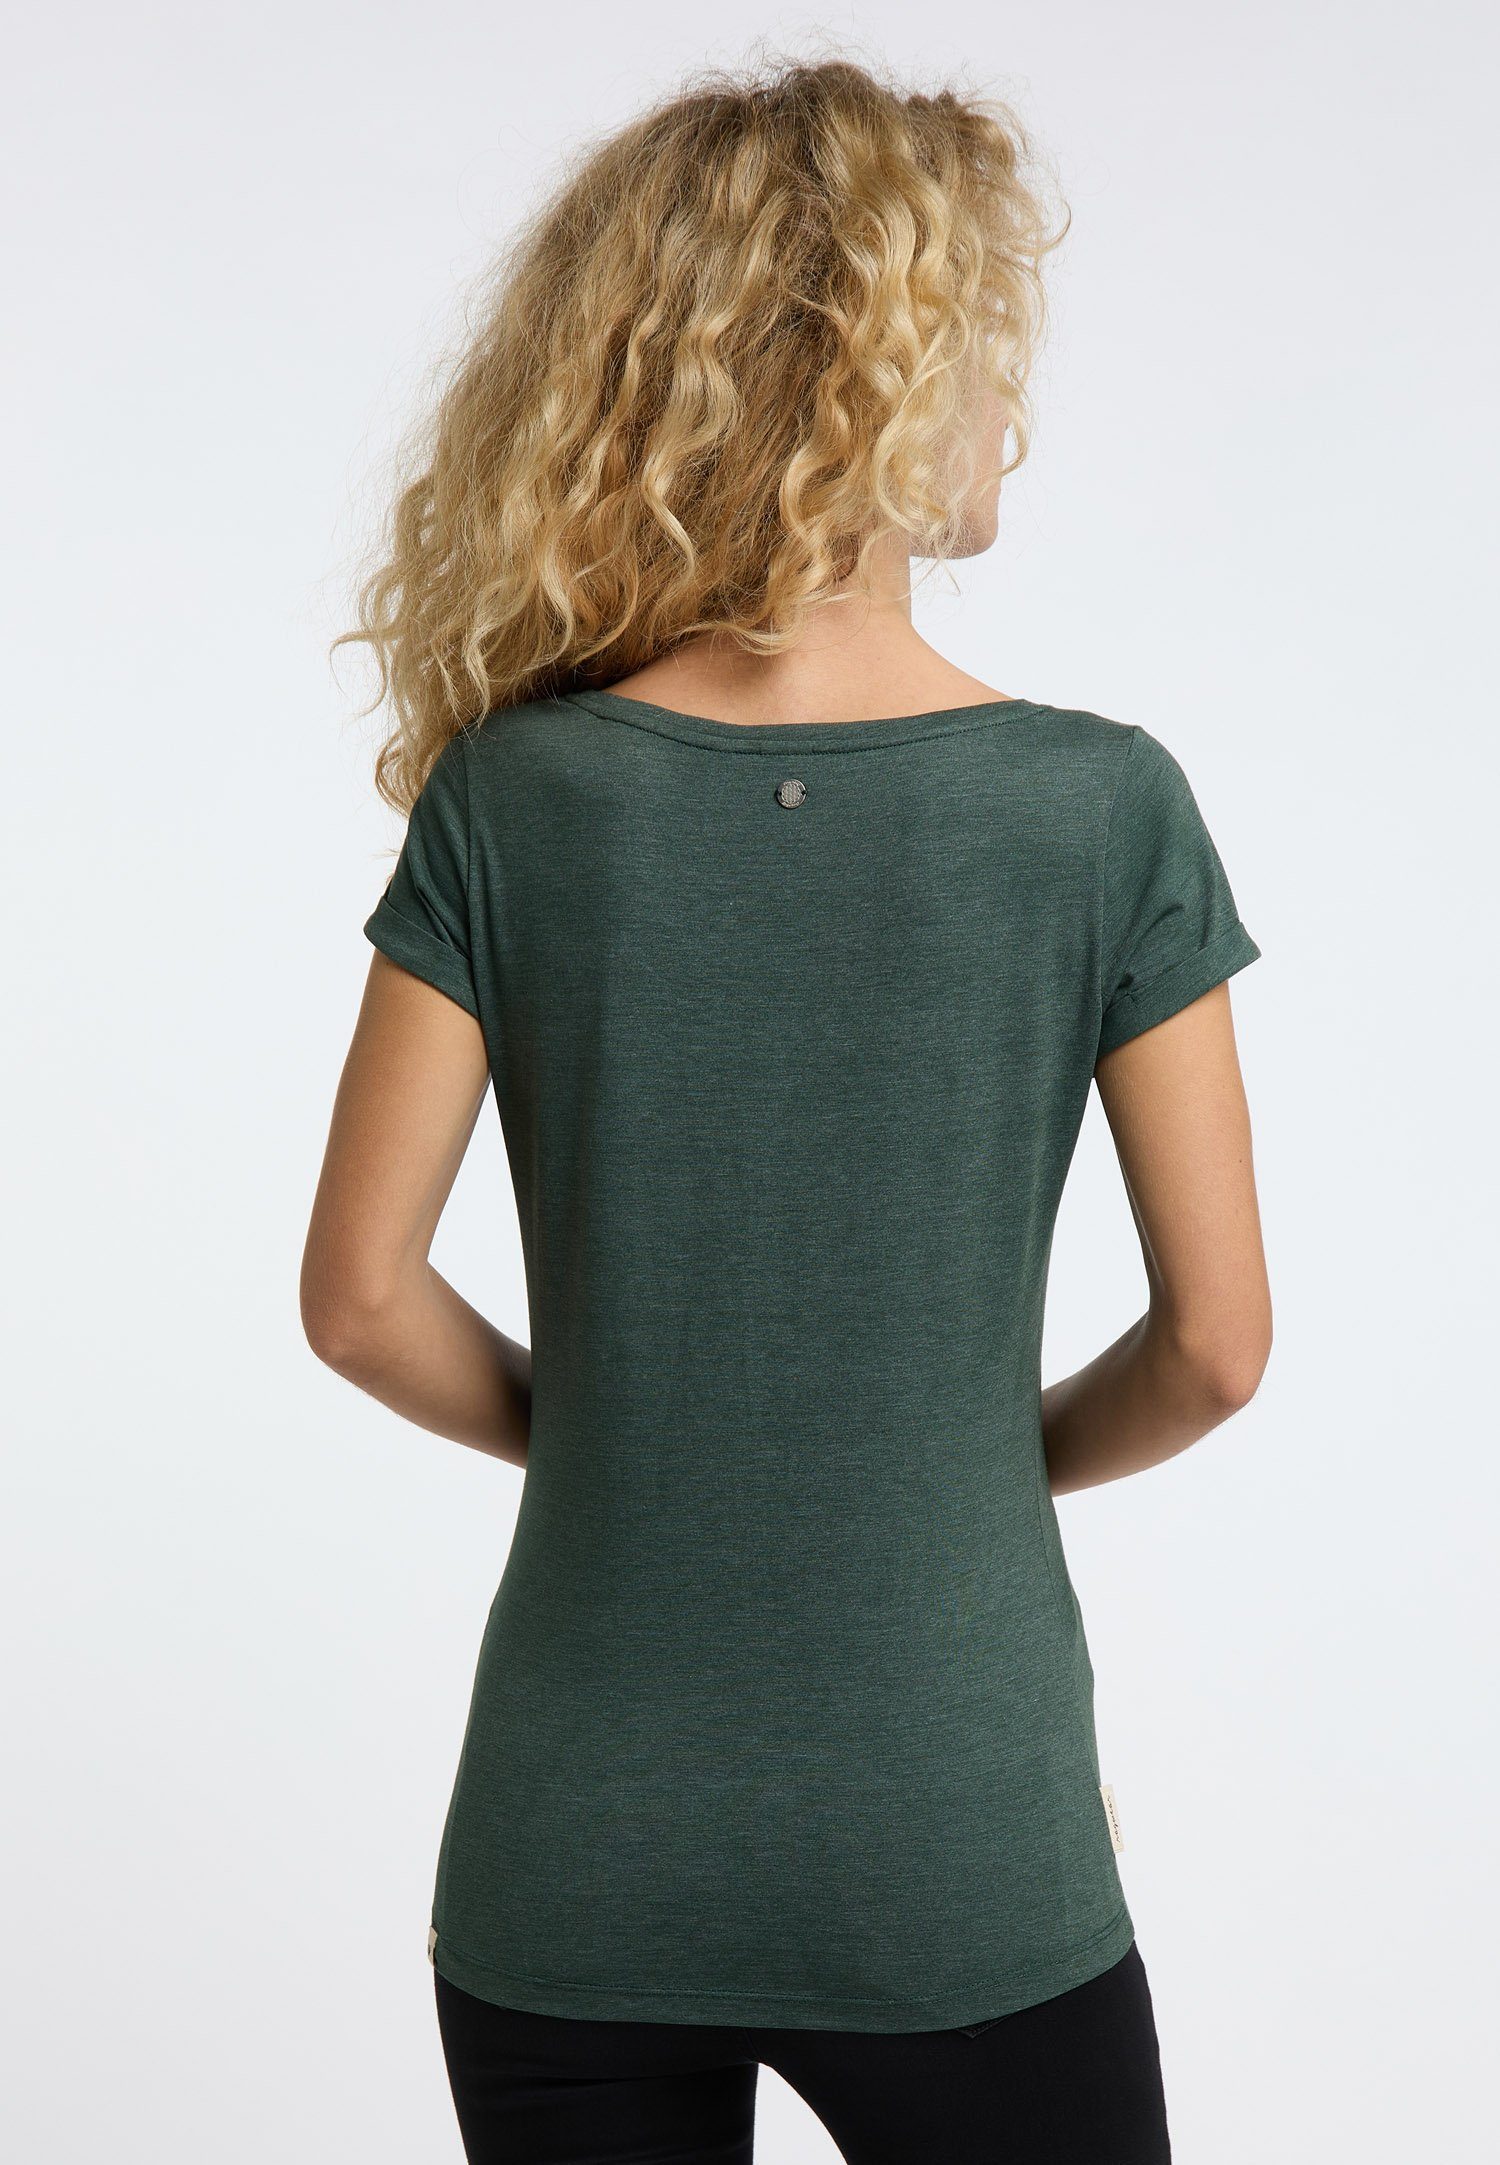 FLORAH A Ragwear & GREEN Nachhaltige T-Shirt Vegane DARK Mode ORGANIC